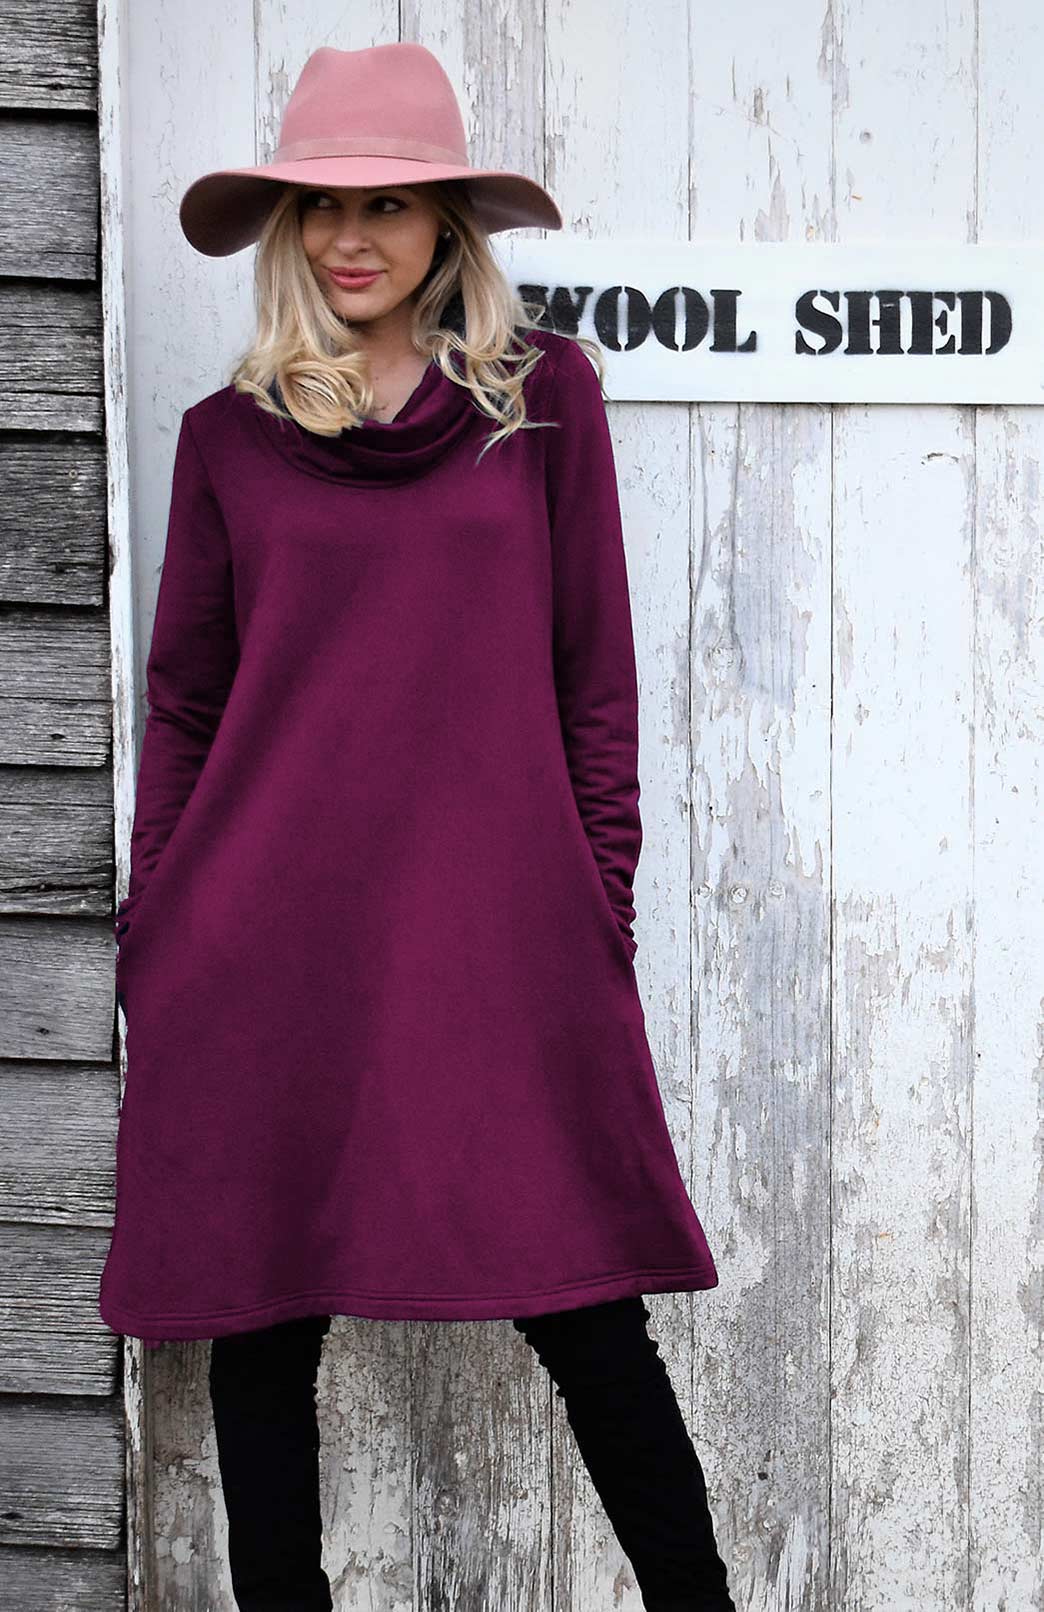 Second: Cowl Neck Swing Dress - Modal Fleece (size 12) - Smitten